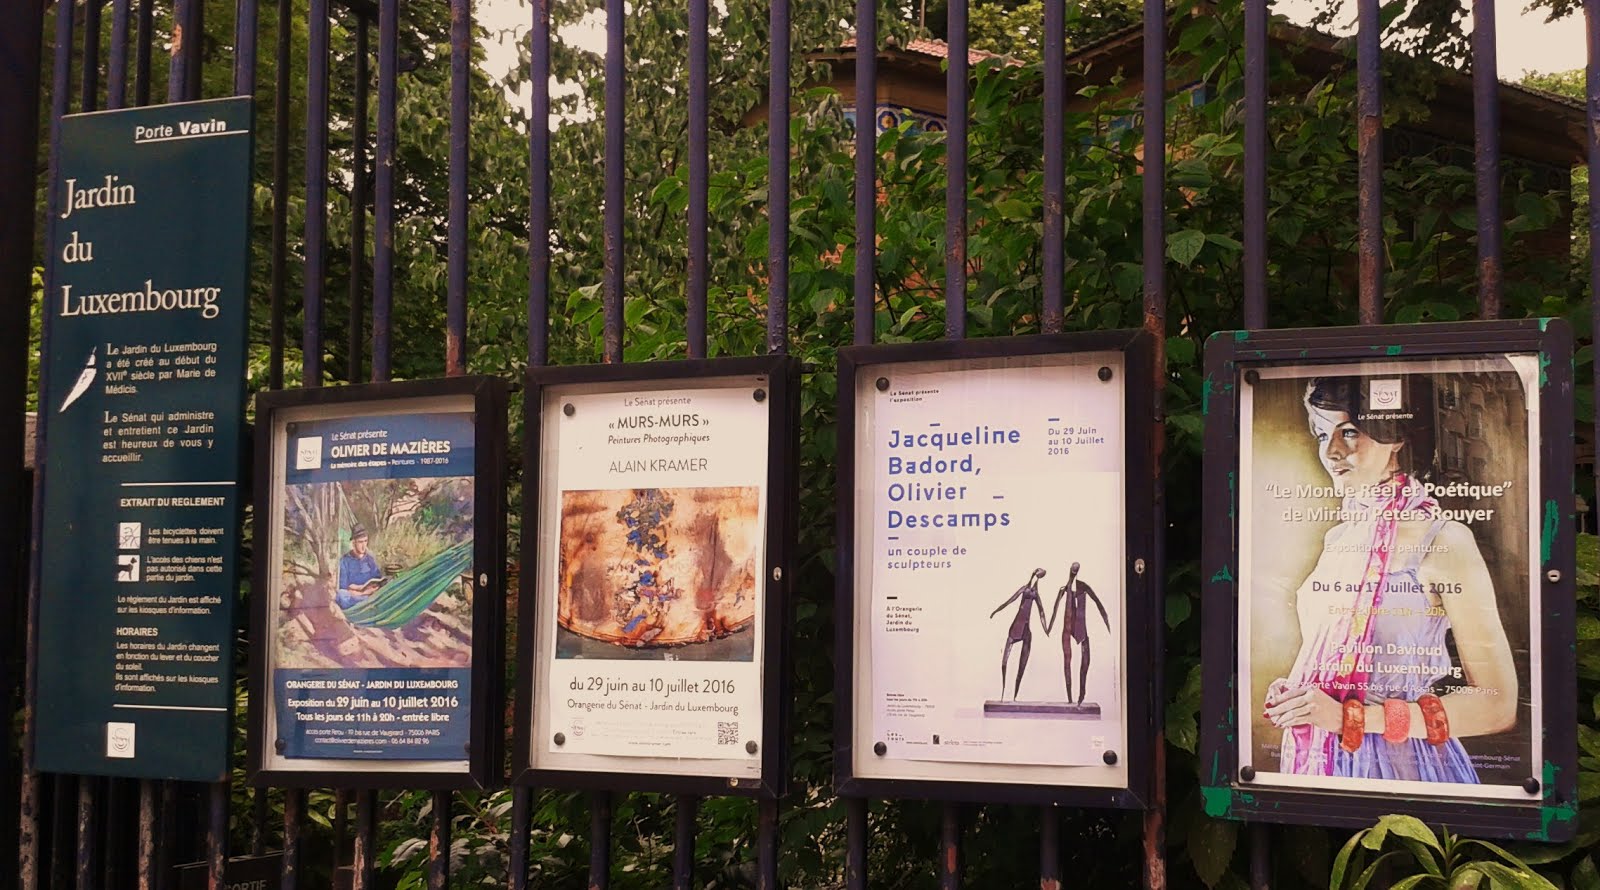 Quelle joie et honneur de voir mon affiche sur les grilles du jardin du Luxembourg à Paris